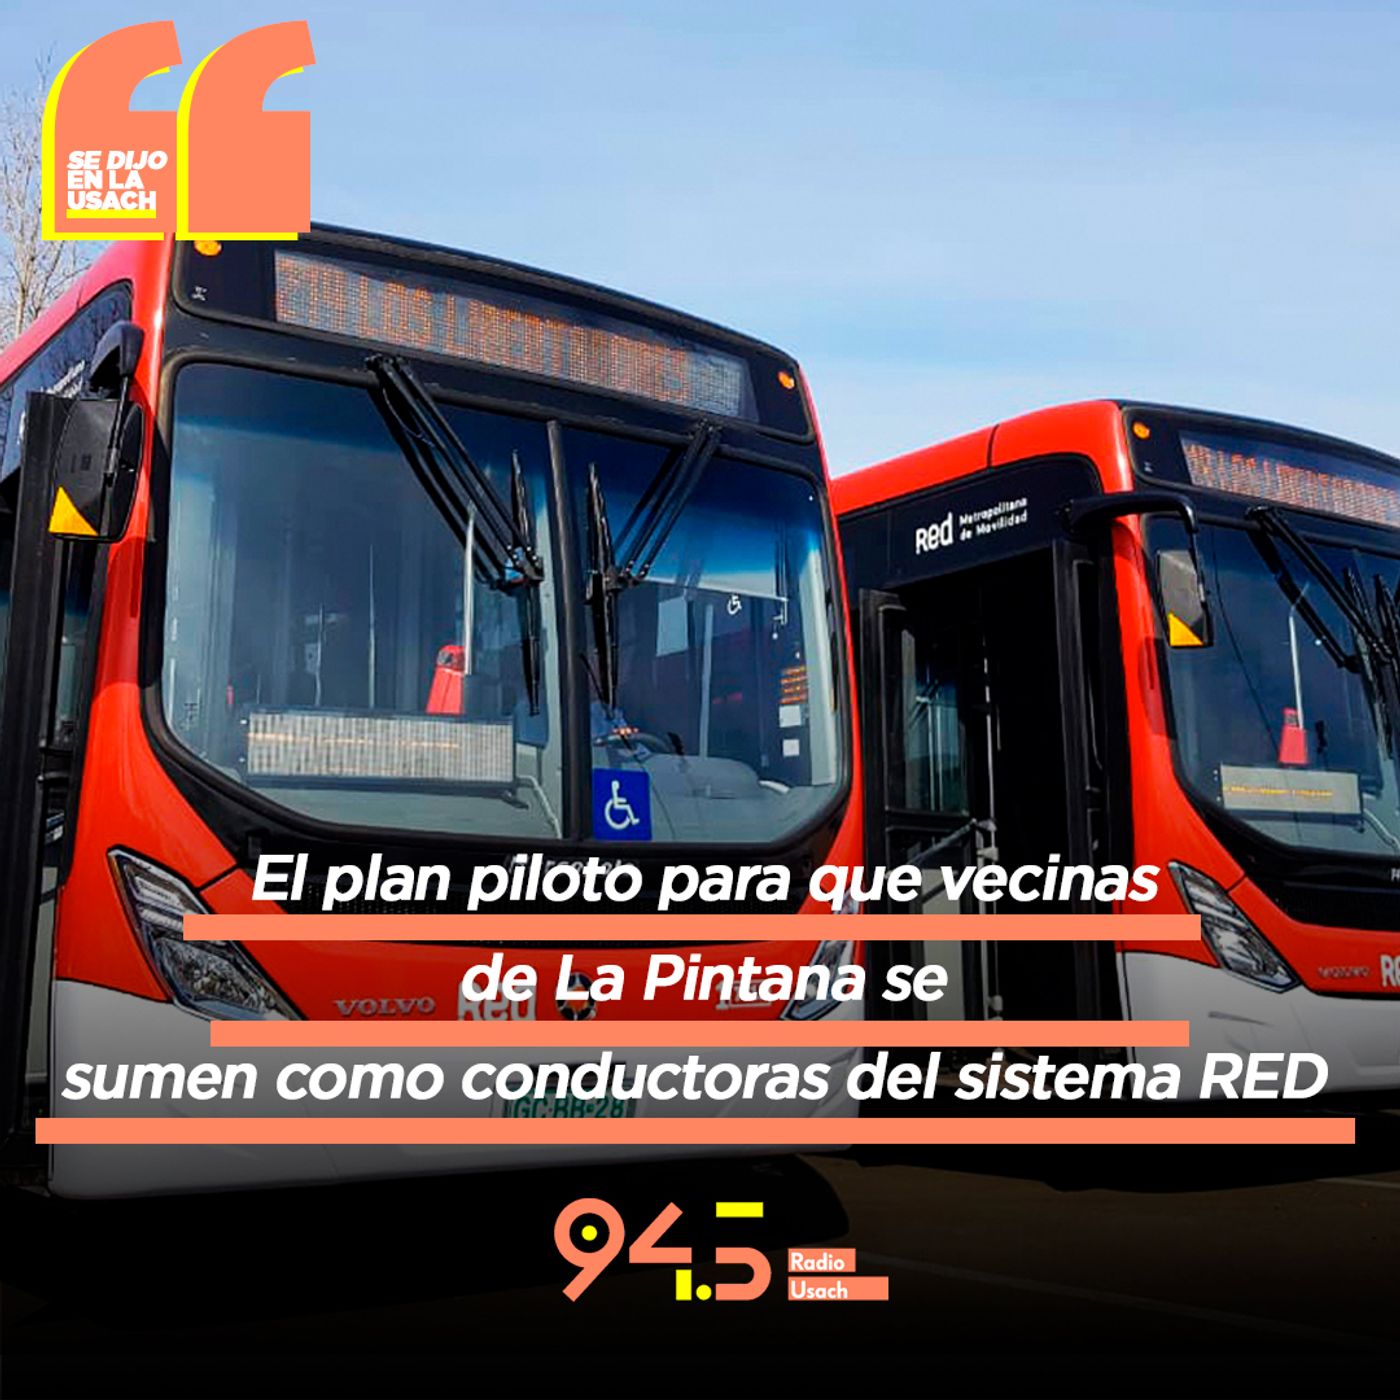 El plan piloto para que vecinas de La Pintana se sumen como conductoras del sistema RED